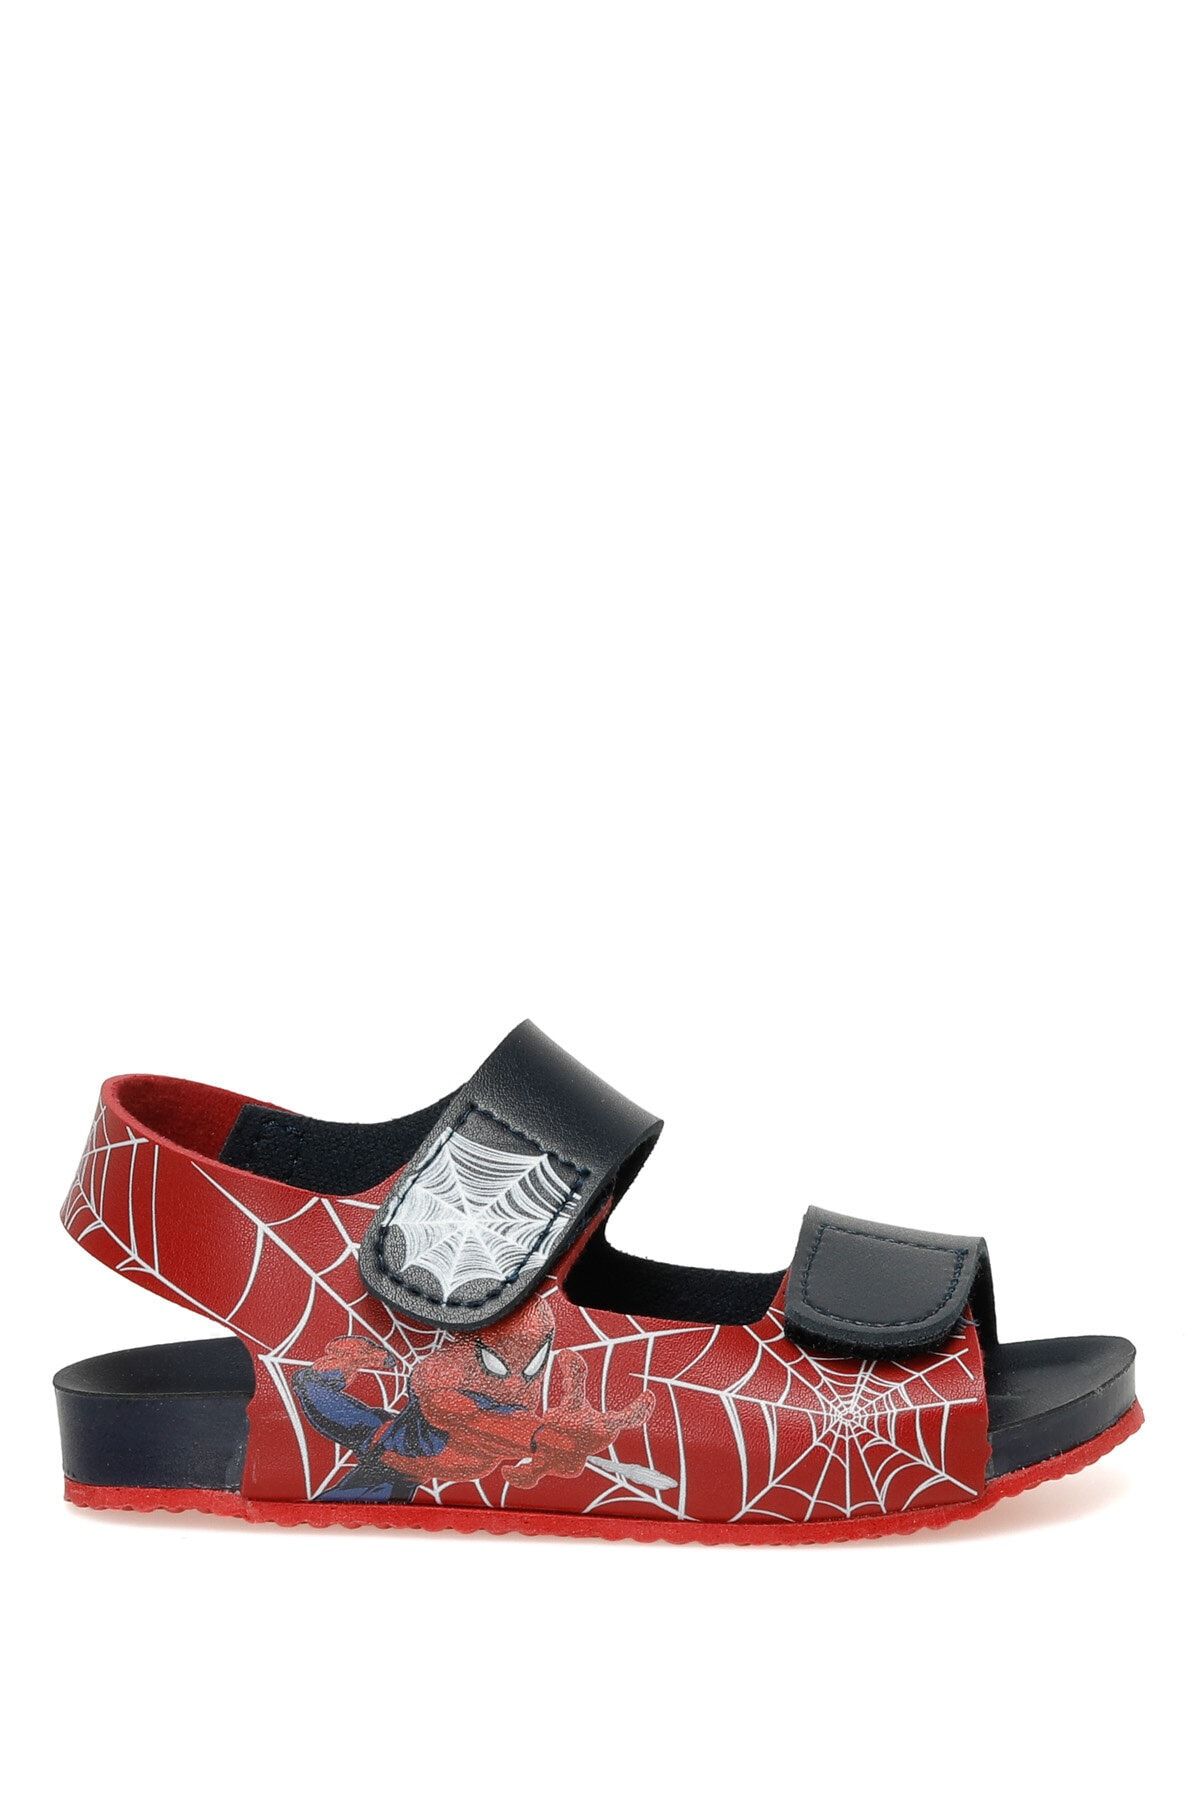 Spiderman Spada.p3fx Lacivert Erkek Çocuk Sandalet